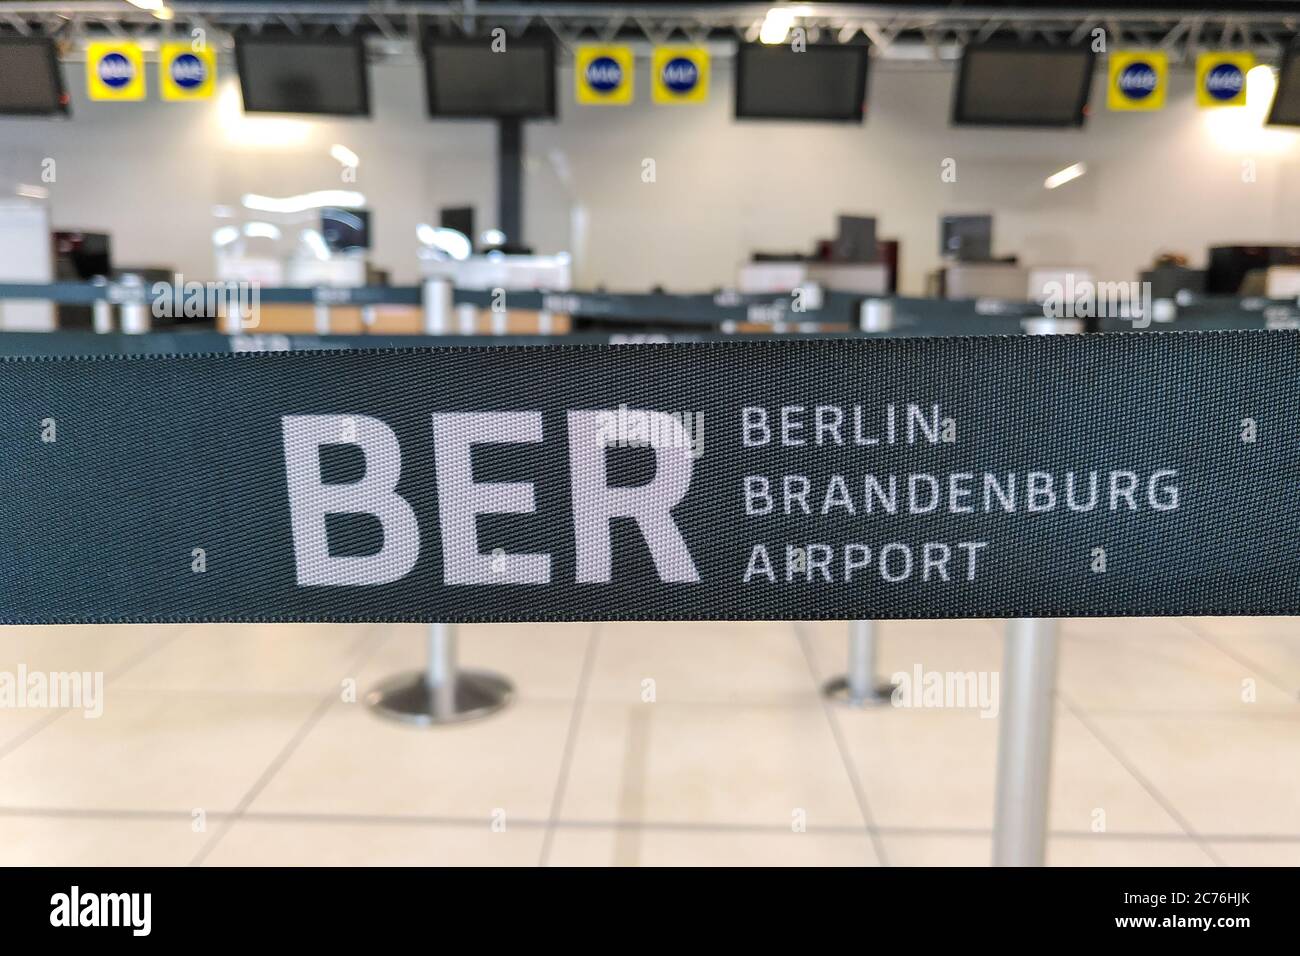 Sperrband für den Flughafen BER Berlin Brandenburg, das während der Coronavirus-Krise in Deutschland am Flughafen Schönefeld an den verlassenen Check-in-Schaltern eingesetzt wurde. Stockfoto